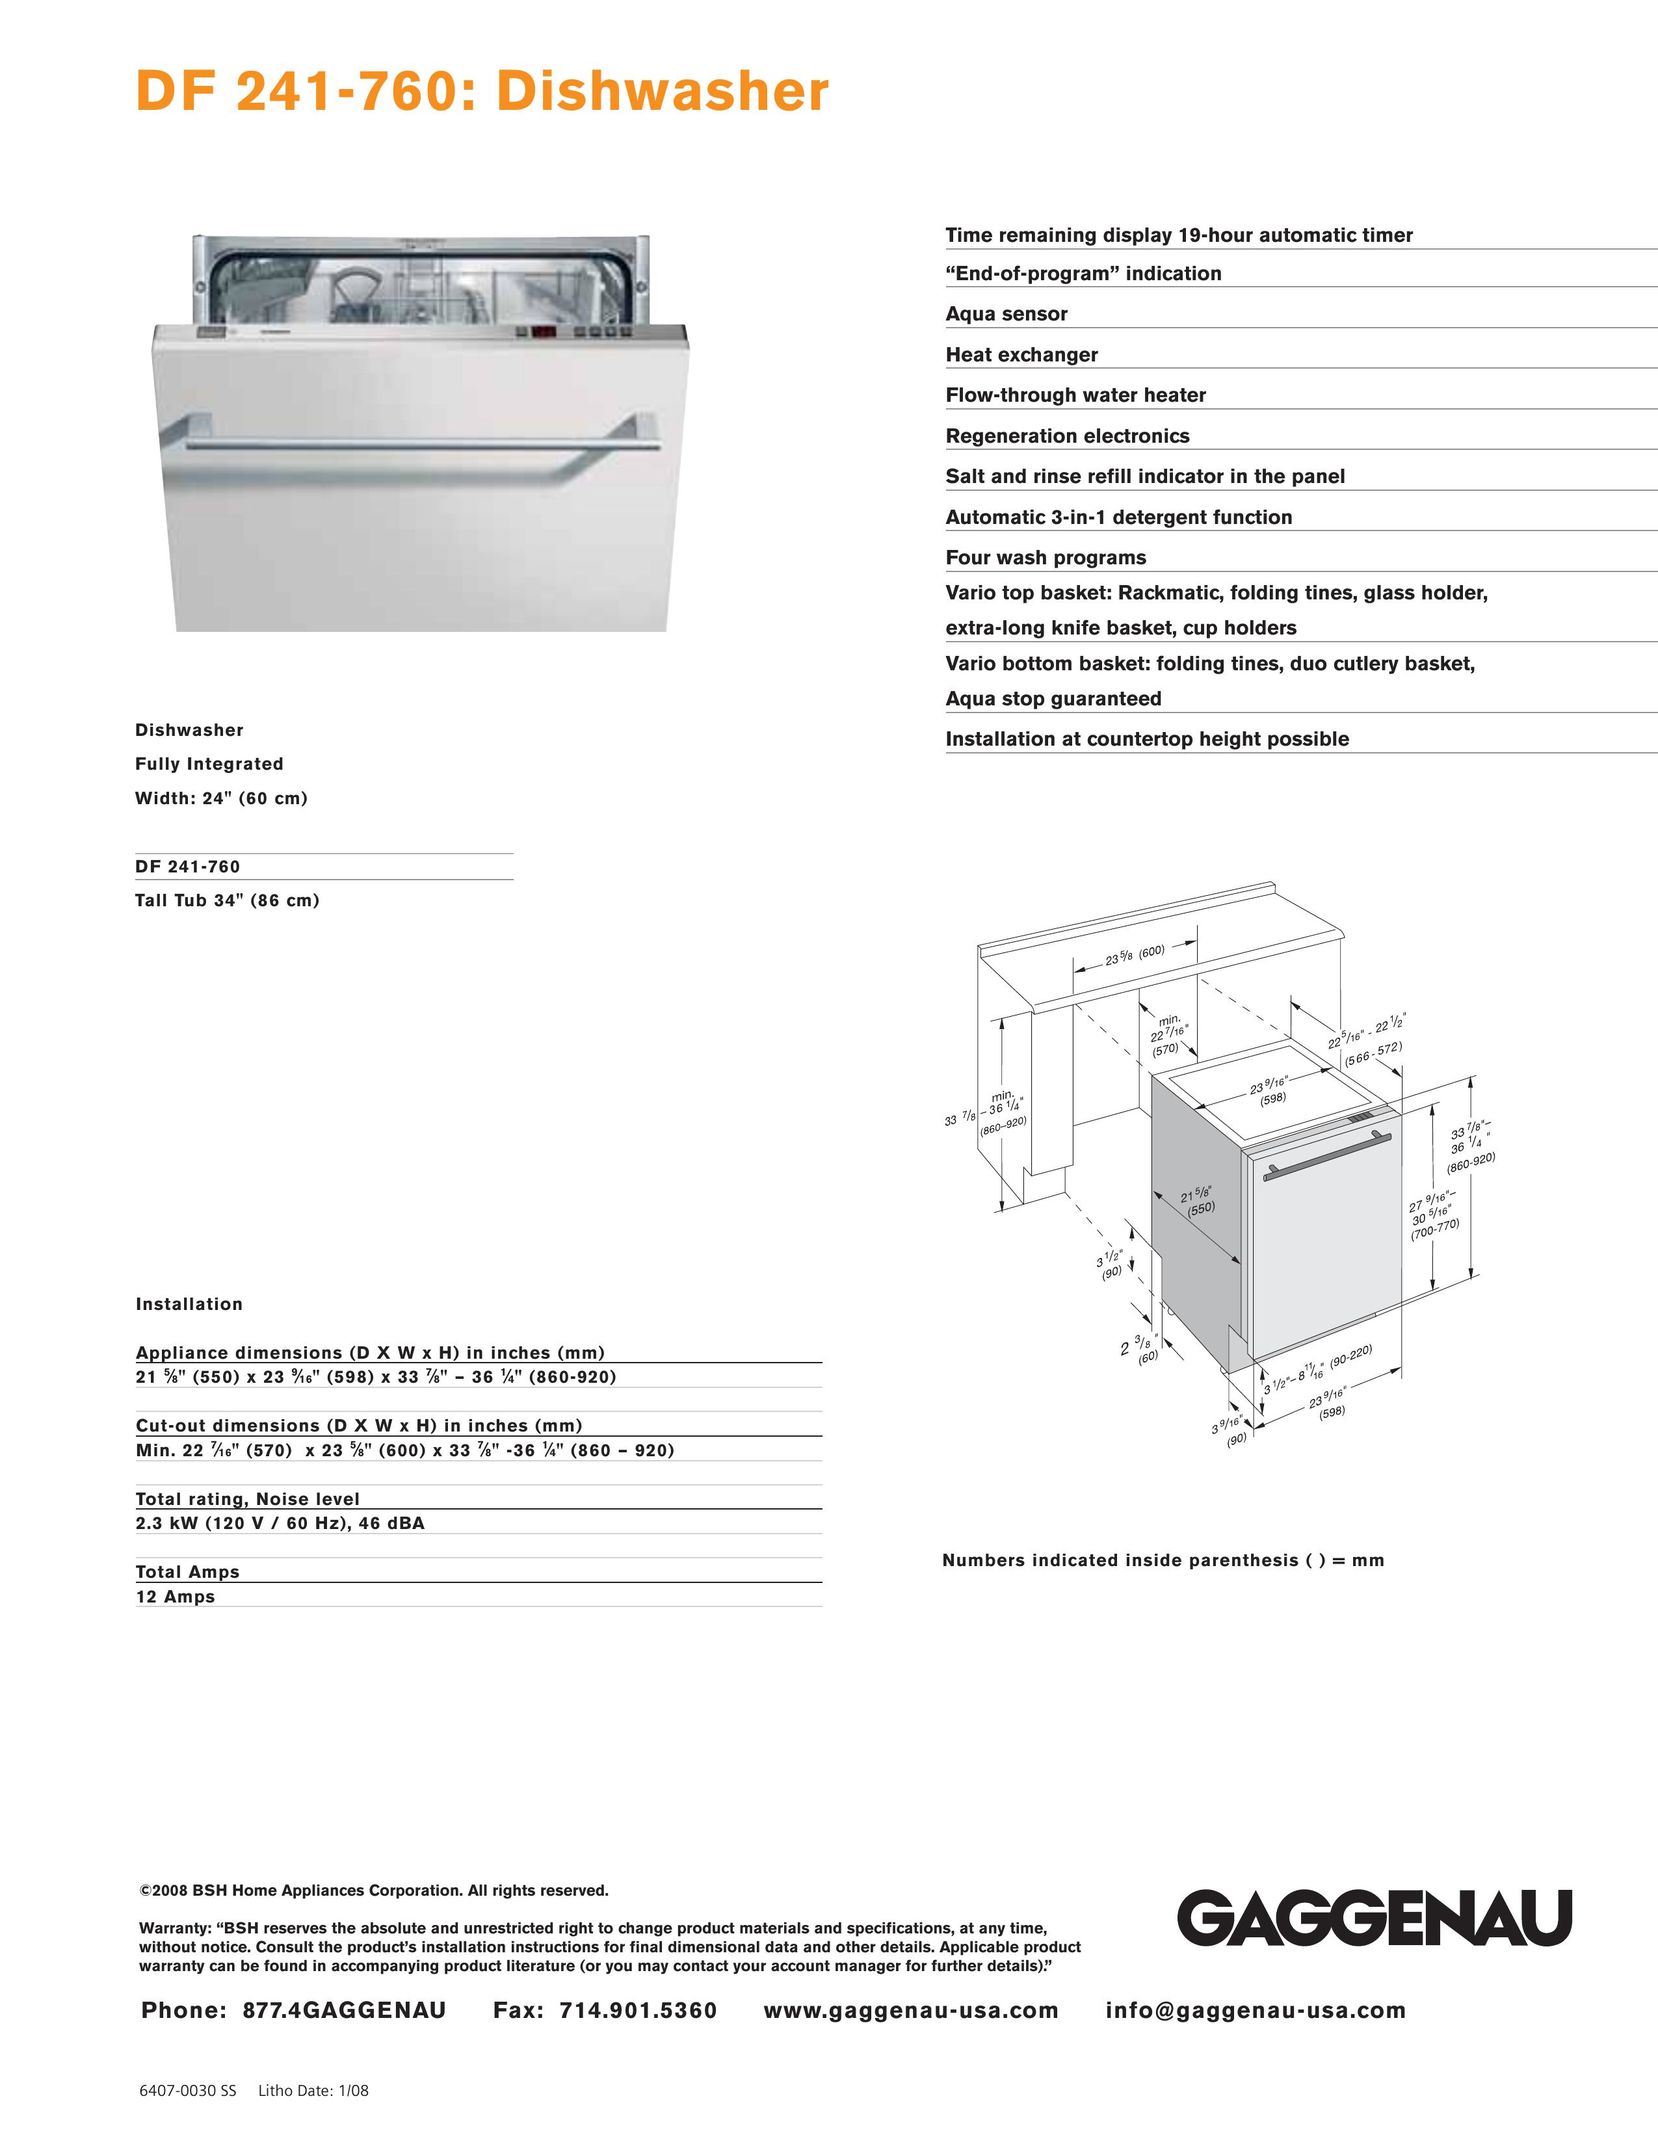 Gaggenau DF 241-760 Dishwasher User Manual